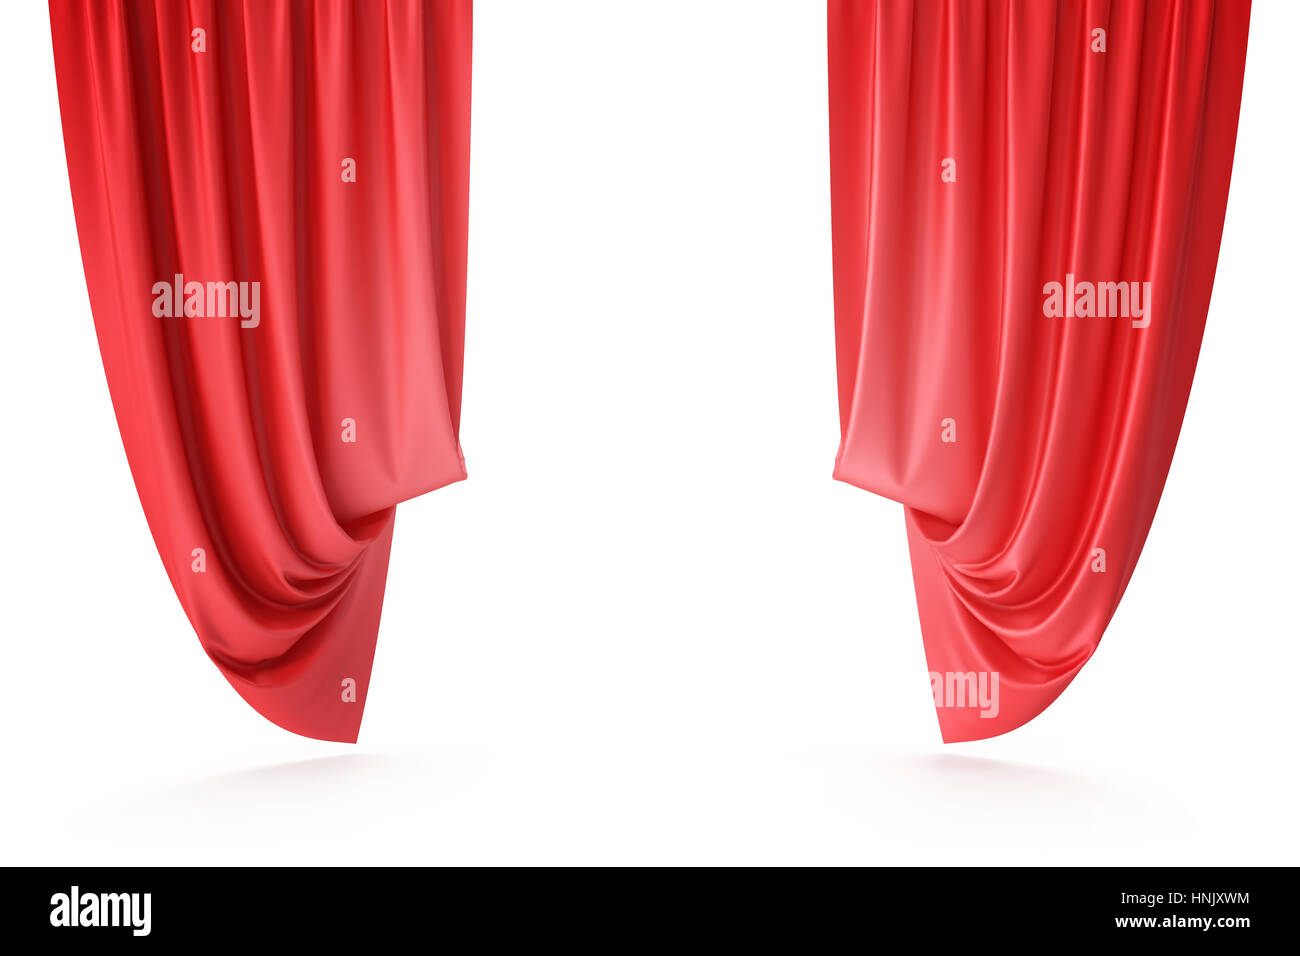 La tenda rossa Immagini senza sfondo e Foto Stock ritagliate - Pagina 3 -  Alamy